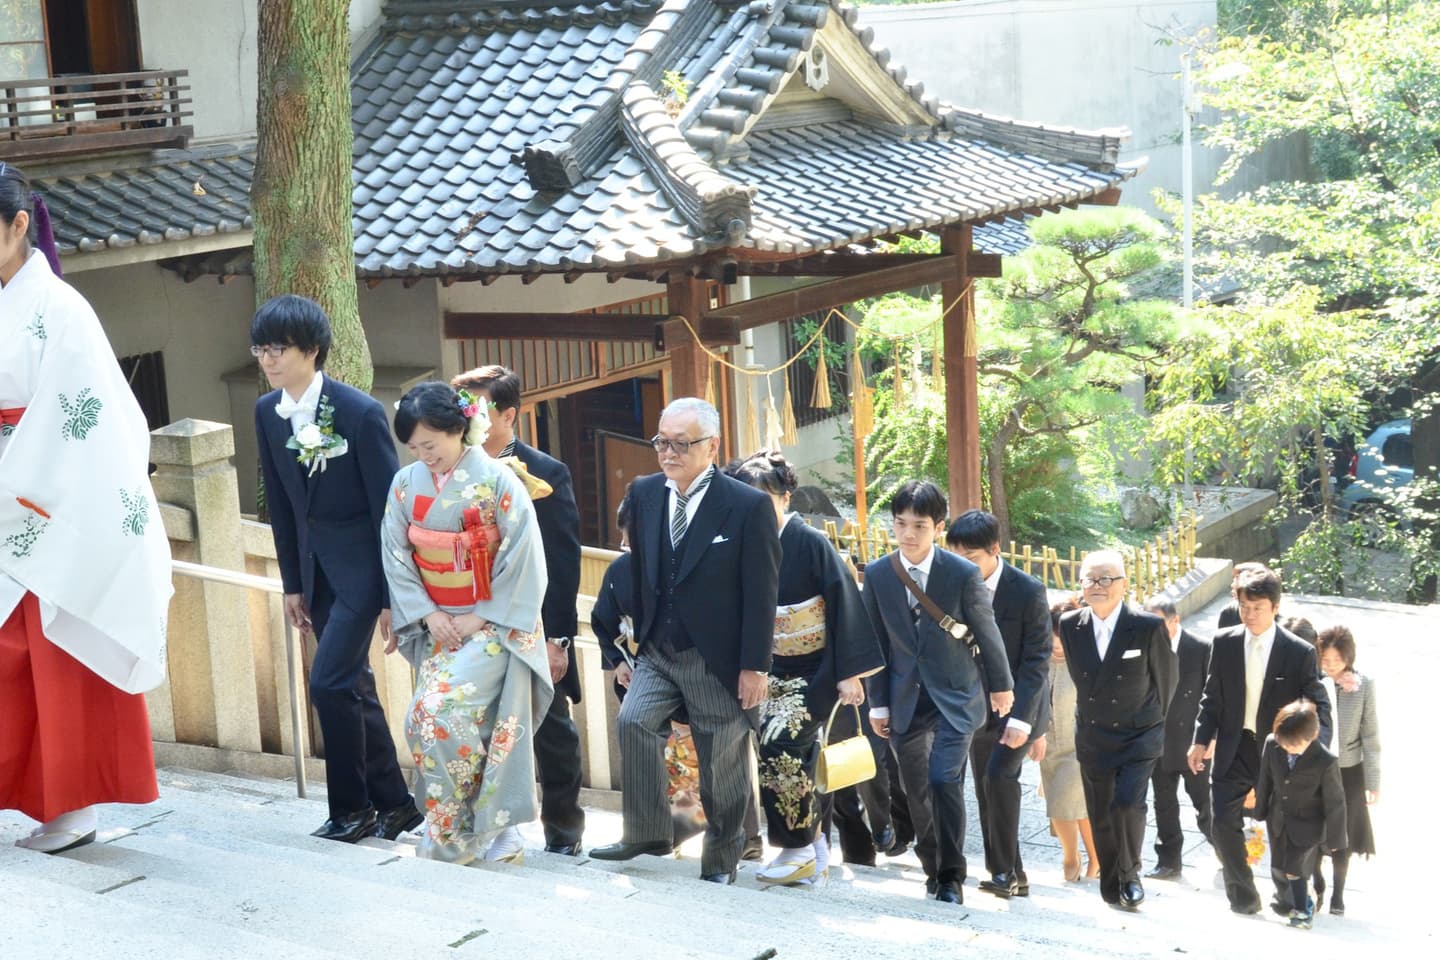 高津宮で結婚式の写真